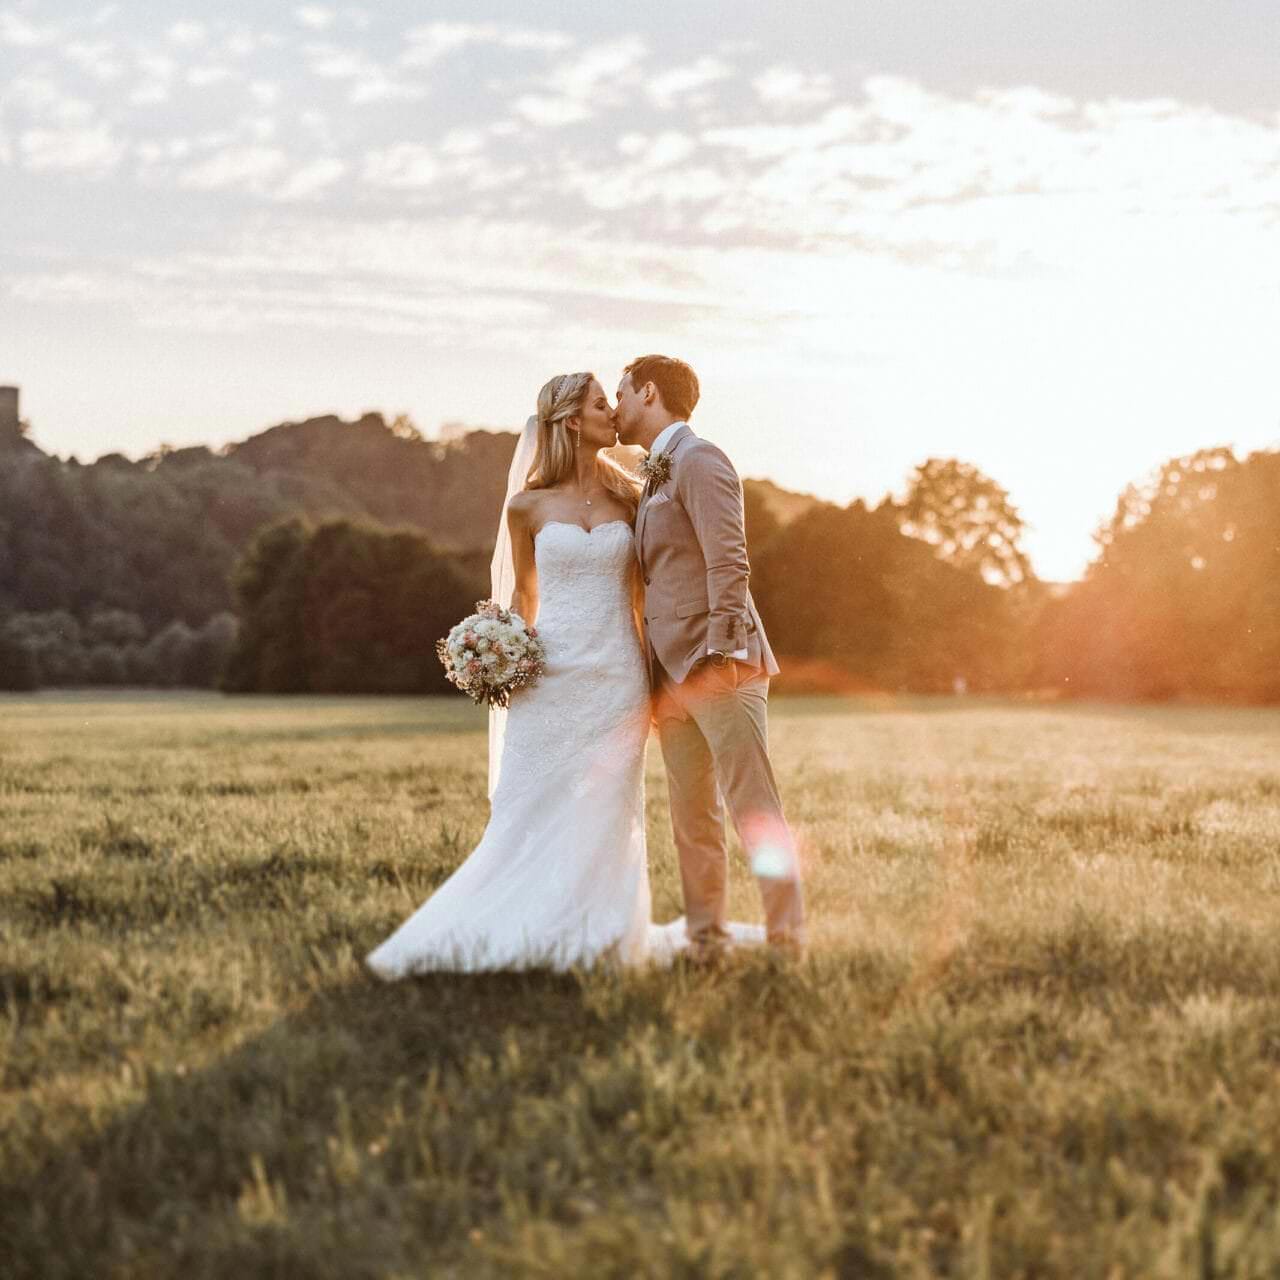 Hochzeitsfotograf Castrop Rauxel Hochzeit Heiraten Hochzeitsfotos - Hochzeitspaar küsst sich auf einer Wiese bei Sonnenuntergang. Bräutigam hat seine linke Hand in der Hosentasche. Die Braut hält ihren Blumenstrauß in der rechten Hand fest. Im Hintergrund ist Wald zu erkennen